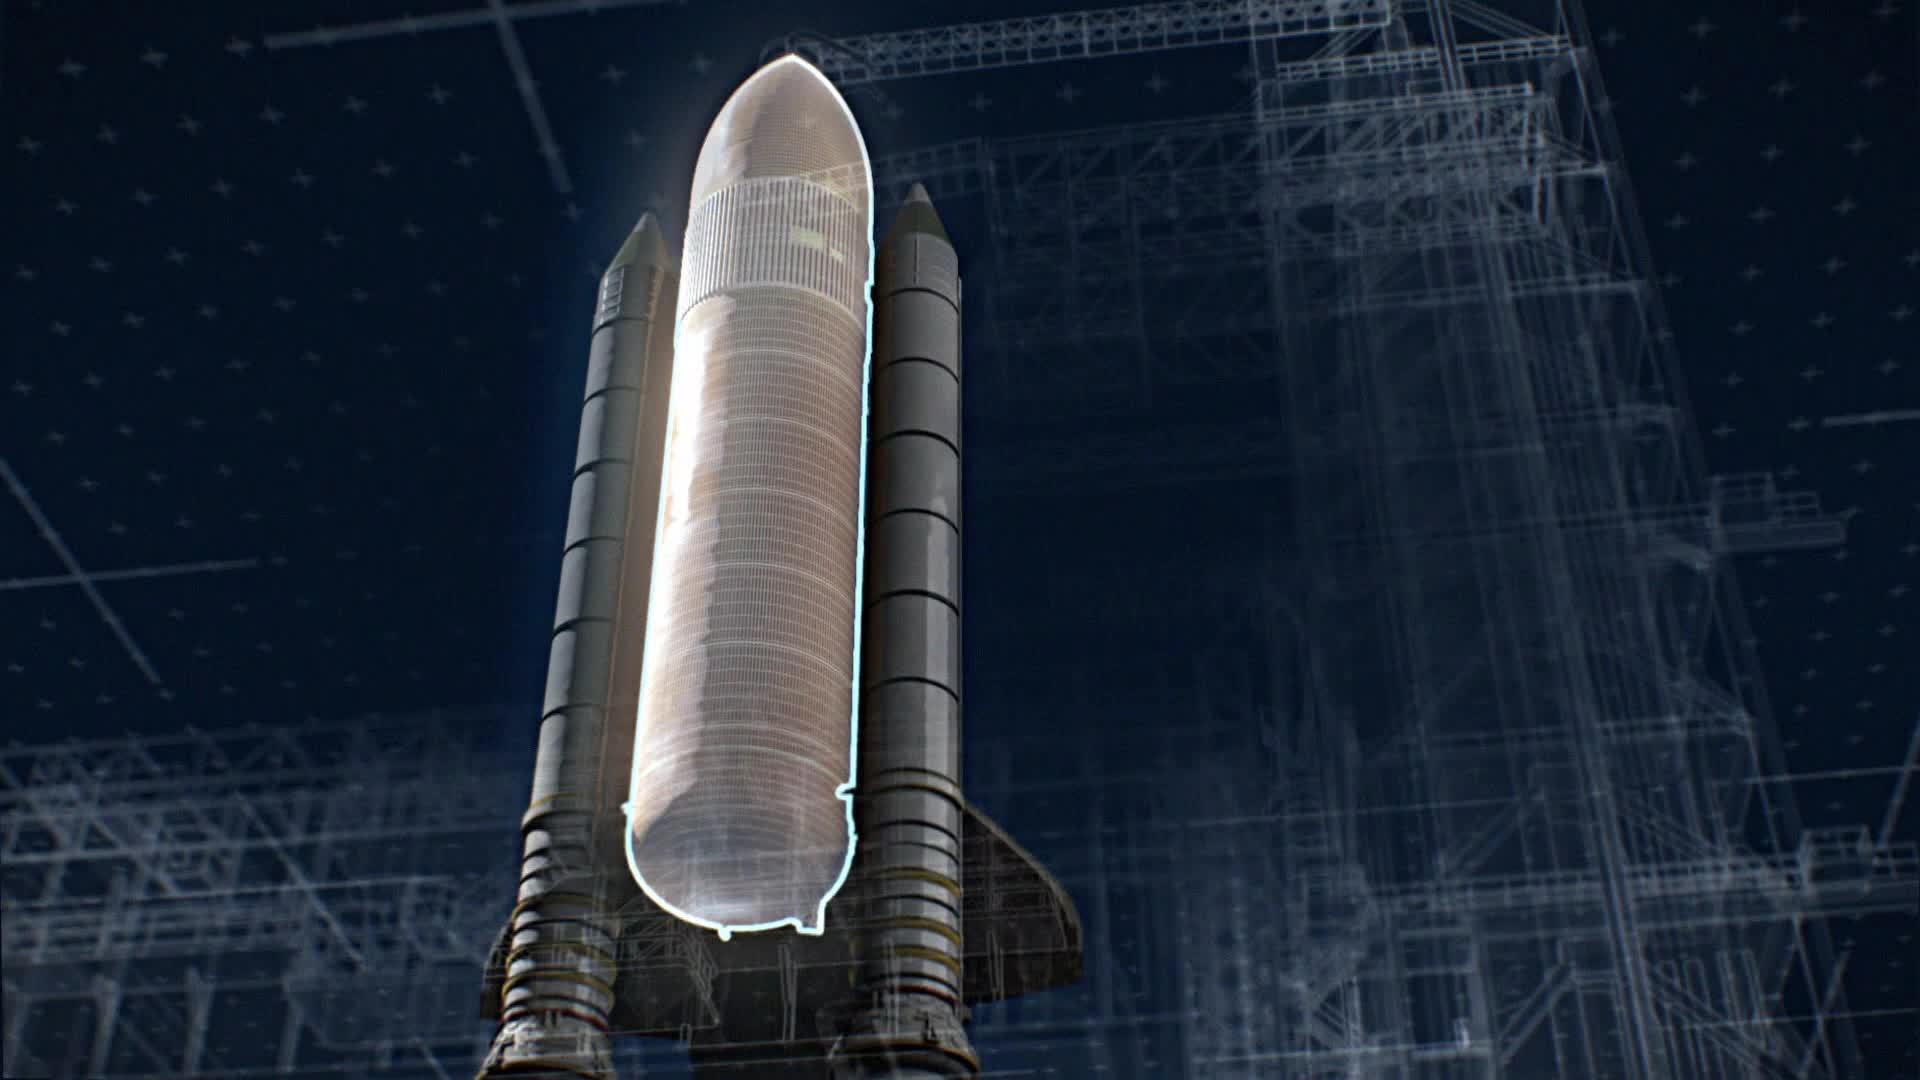 1x08 Columbia: La explosión del transbordador espacial